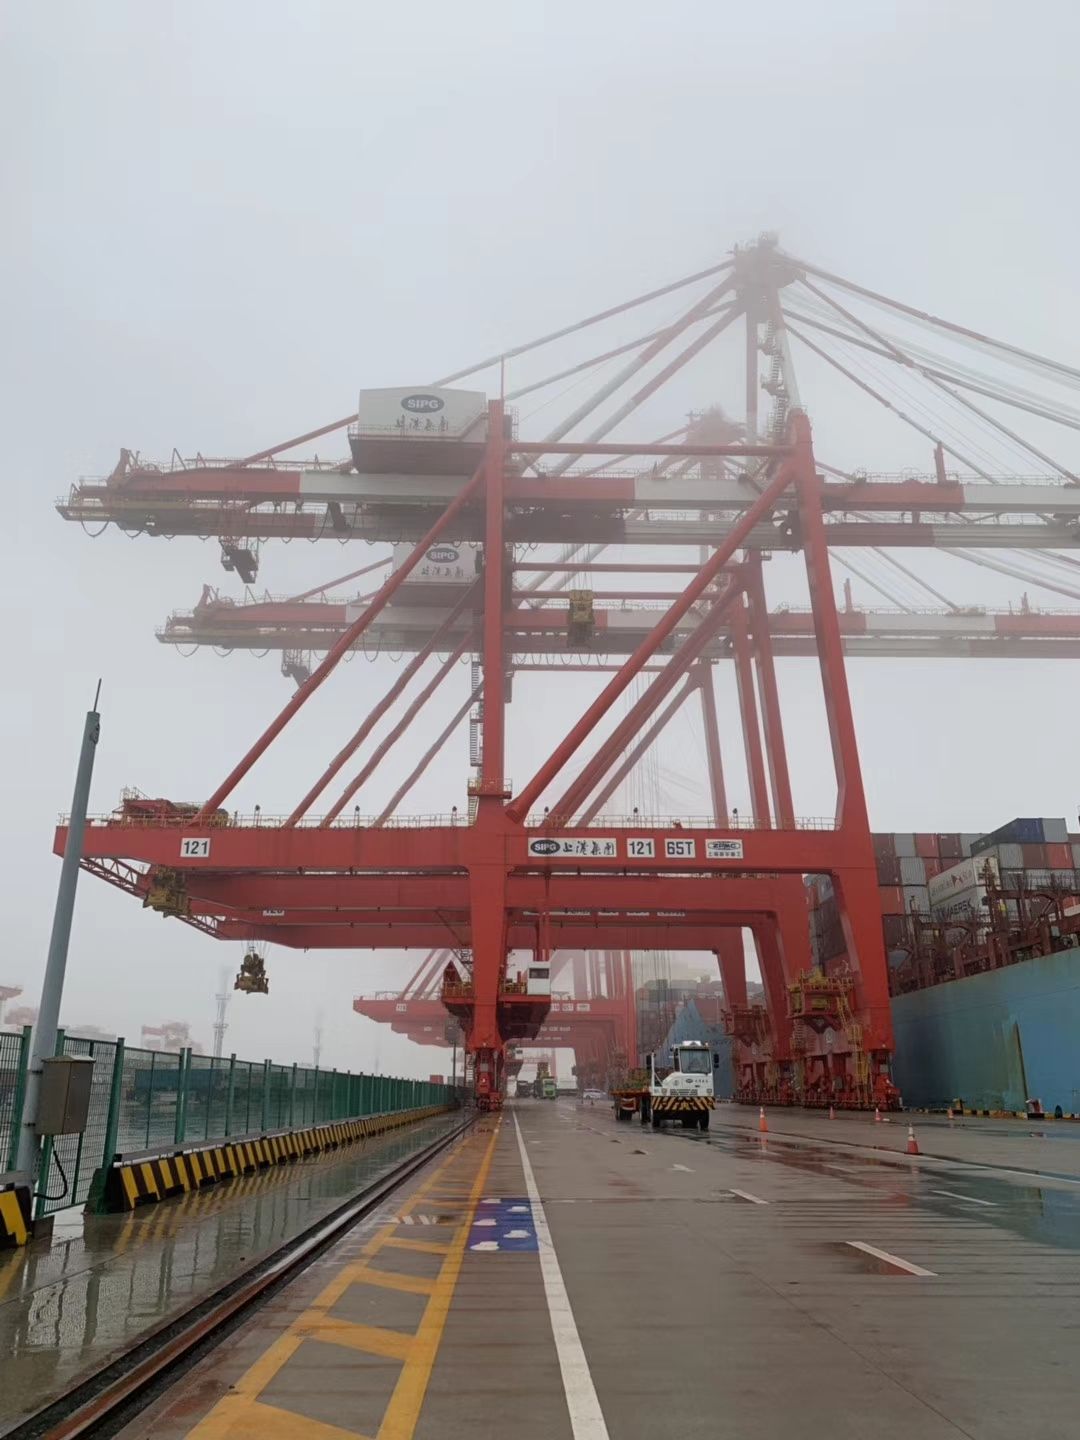 上海洋山港开港15周年 累计查验入出境超12万余艘次--视界网